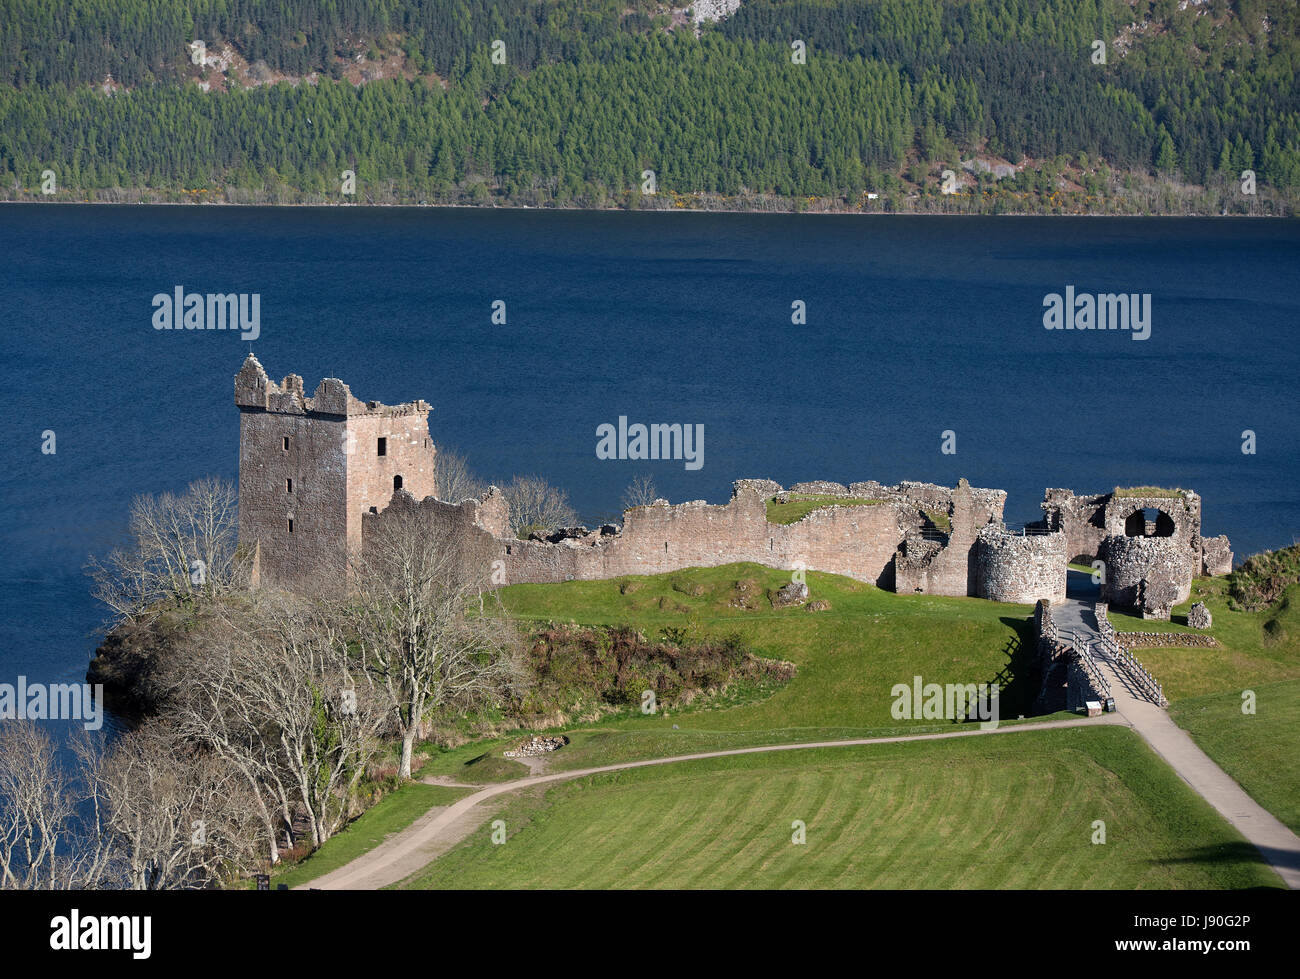 Le Château d'Urquhart sur les rives du Loch Ness à partir de l'A82 près de Drumnadrochit, Invernesshire. Région des Highlands. L'Écosse. UK. Banque D'Images